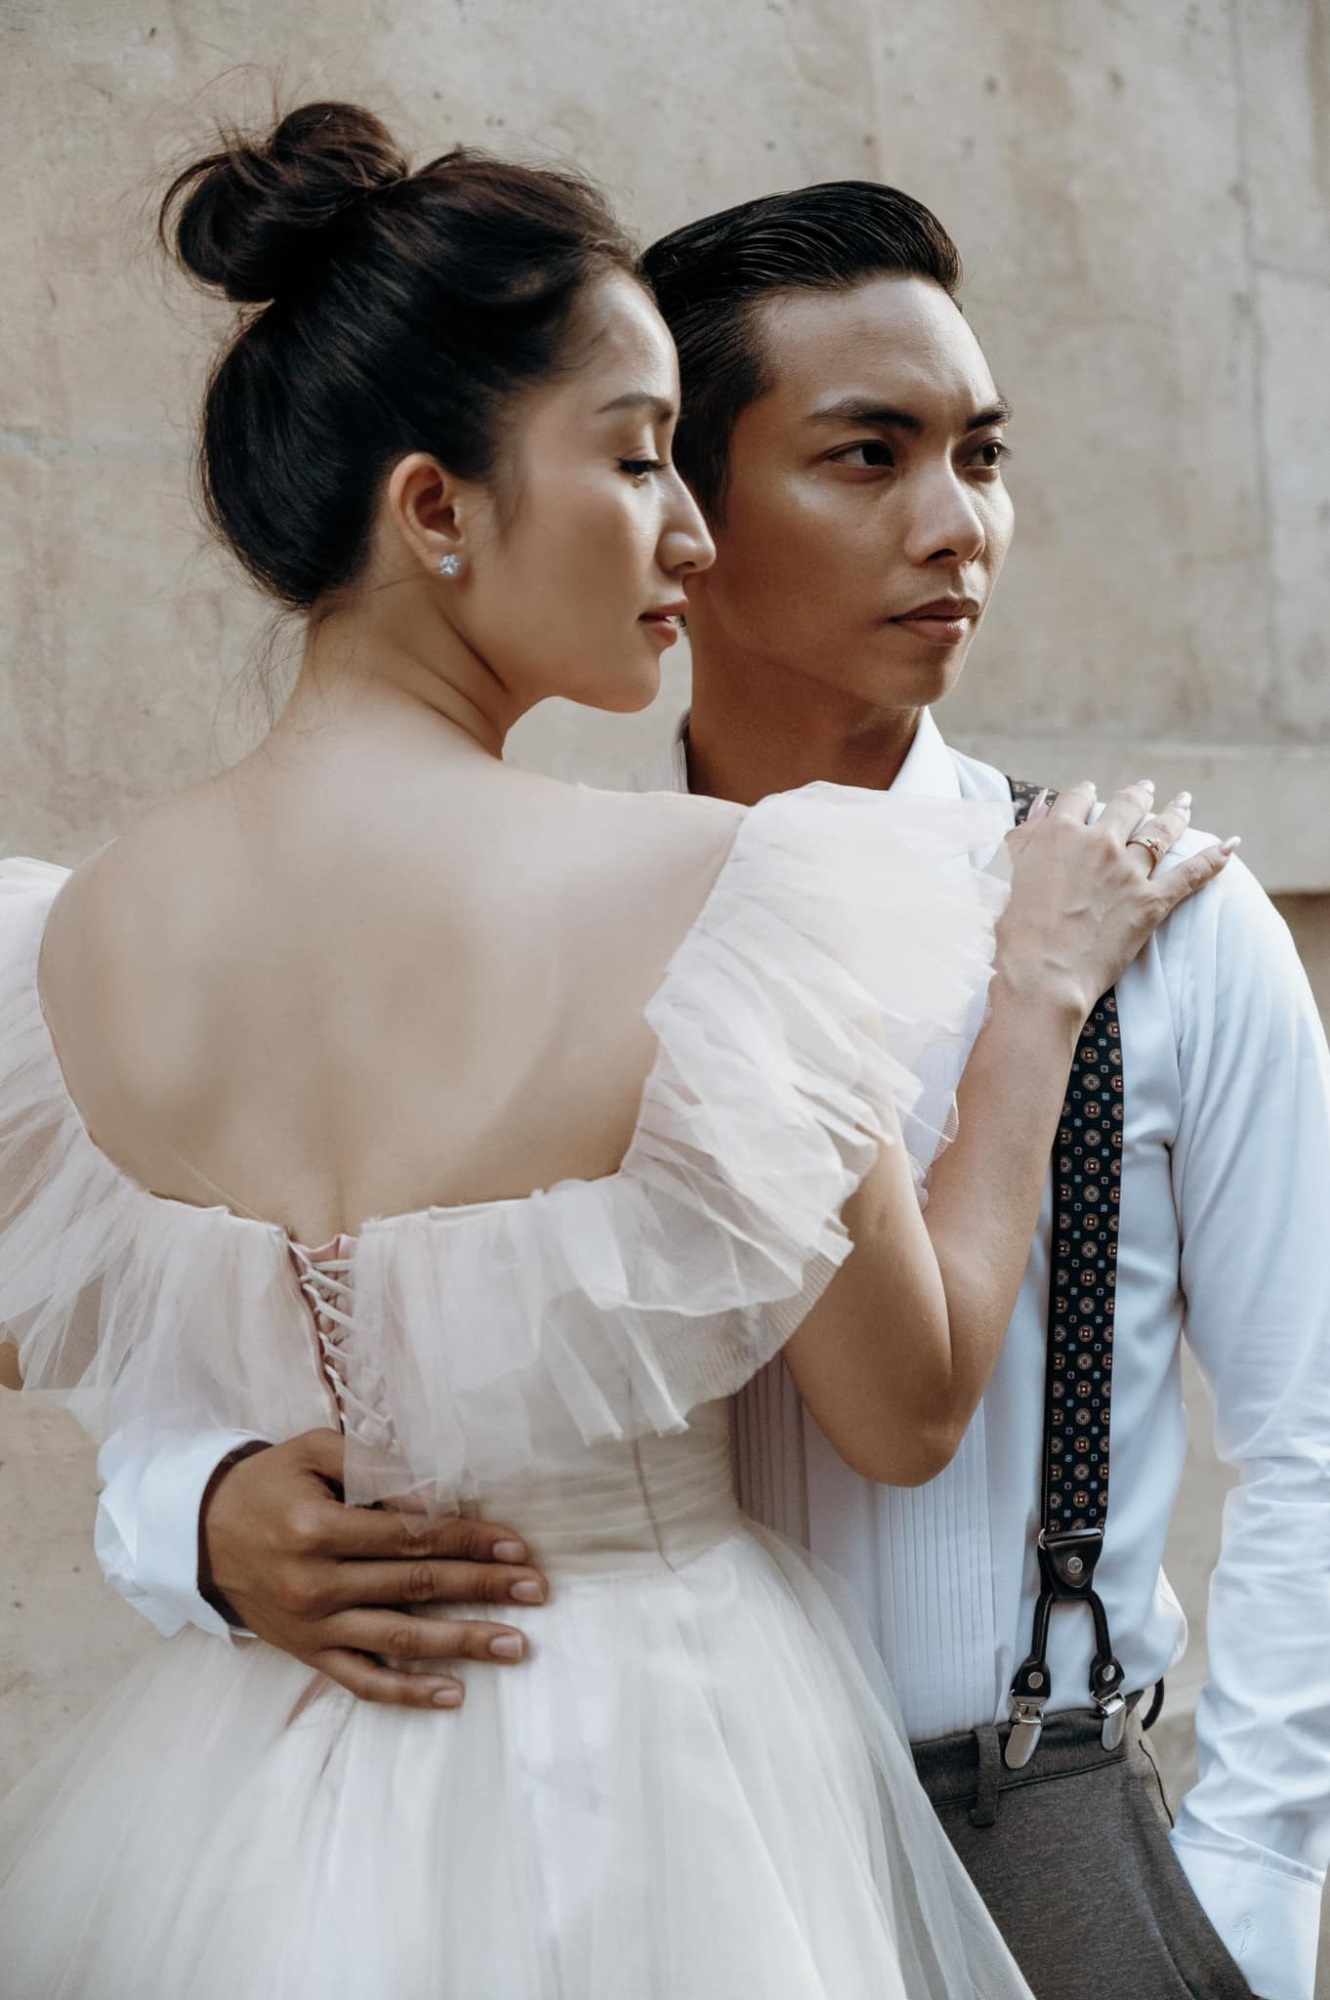 Phan Hiển và Khánh Thi tái hiện chuyện tình yêu gắn liền với nhảy múa trong bộ ảnh cưới chụp ở Pháp - Ảnh 2